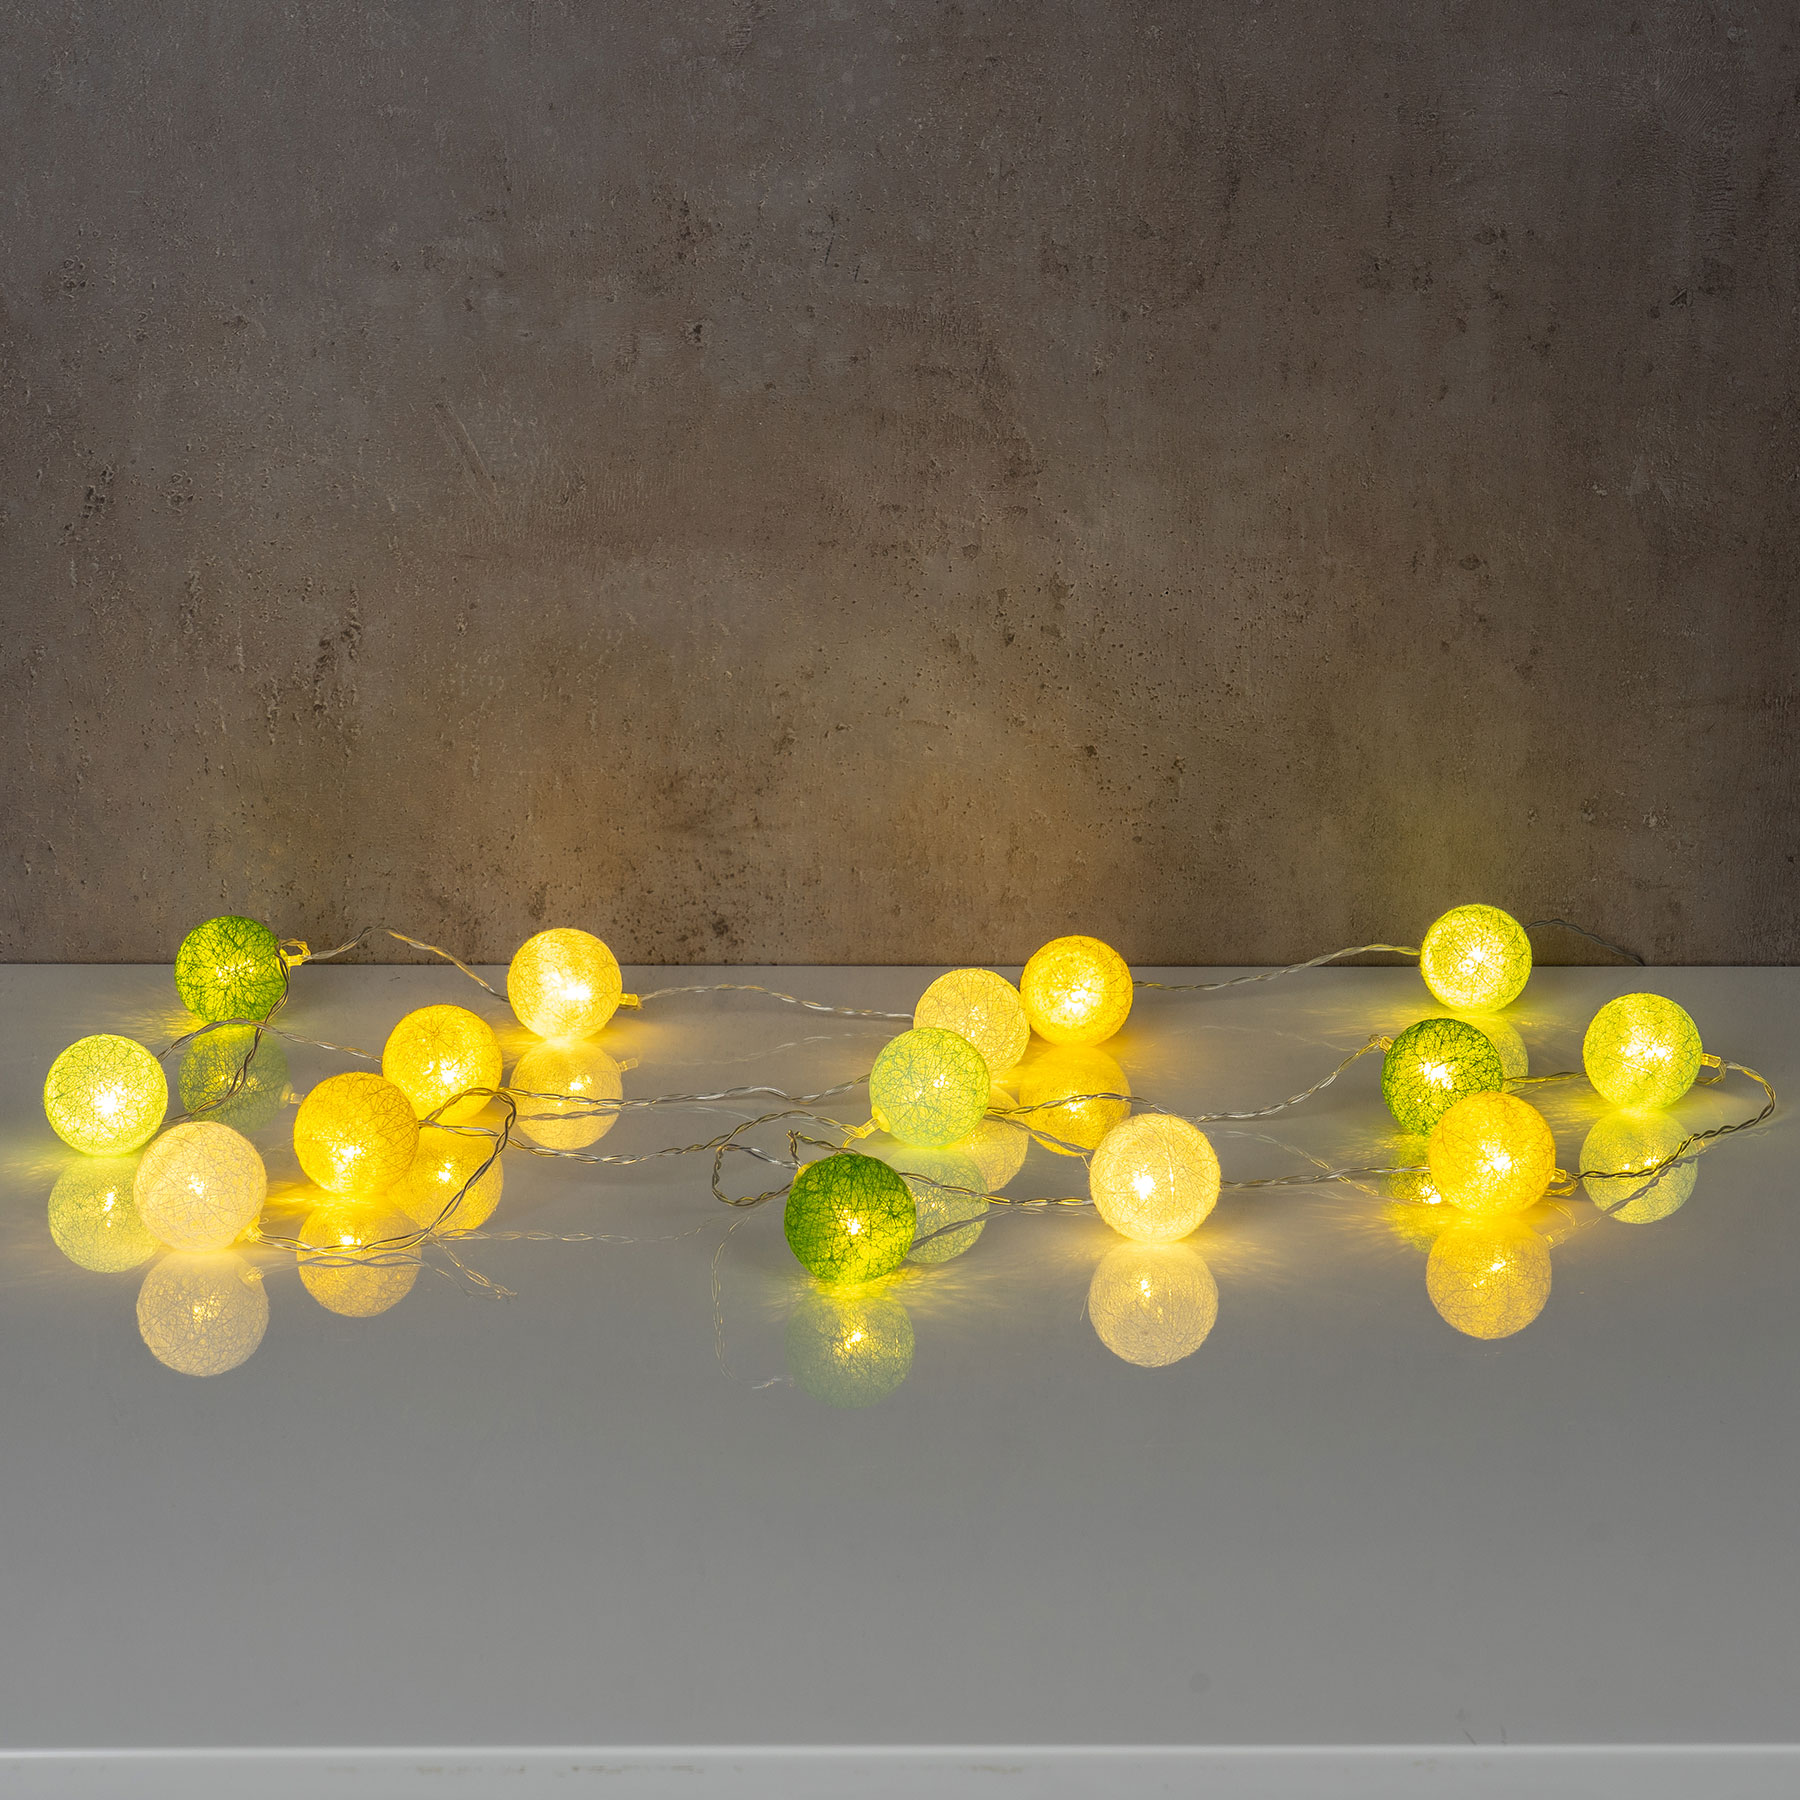 Ormromra Lichterkette Zitronen Lichterkette mit 3m,20 LED Lampenperlen,dekorative  Lichter